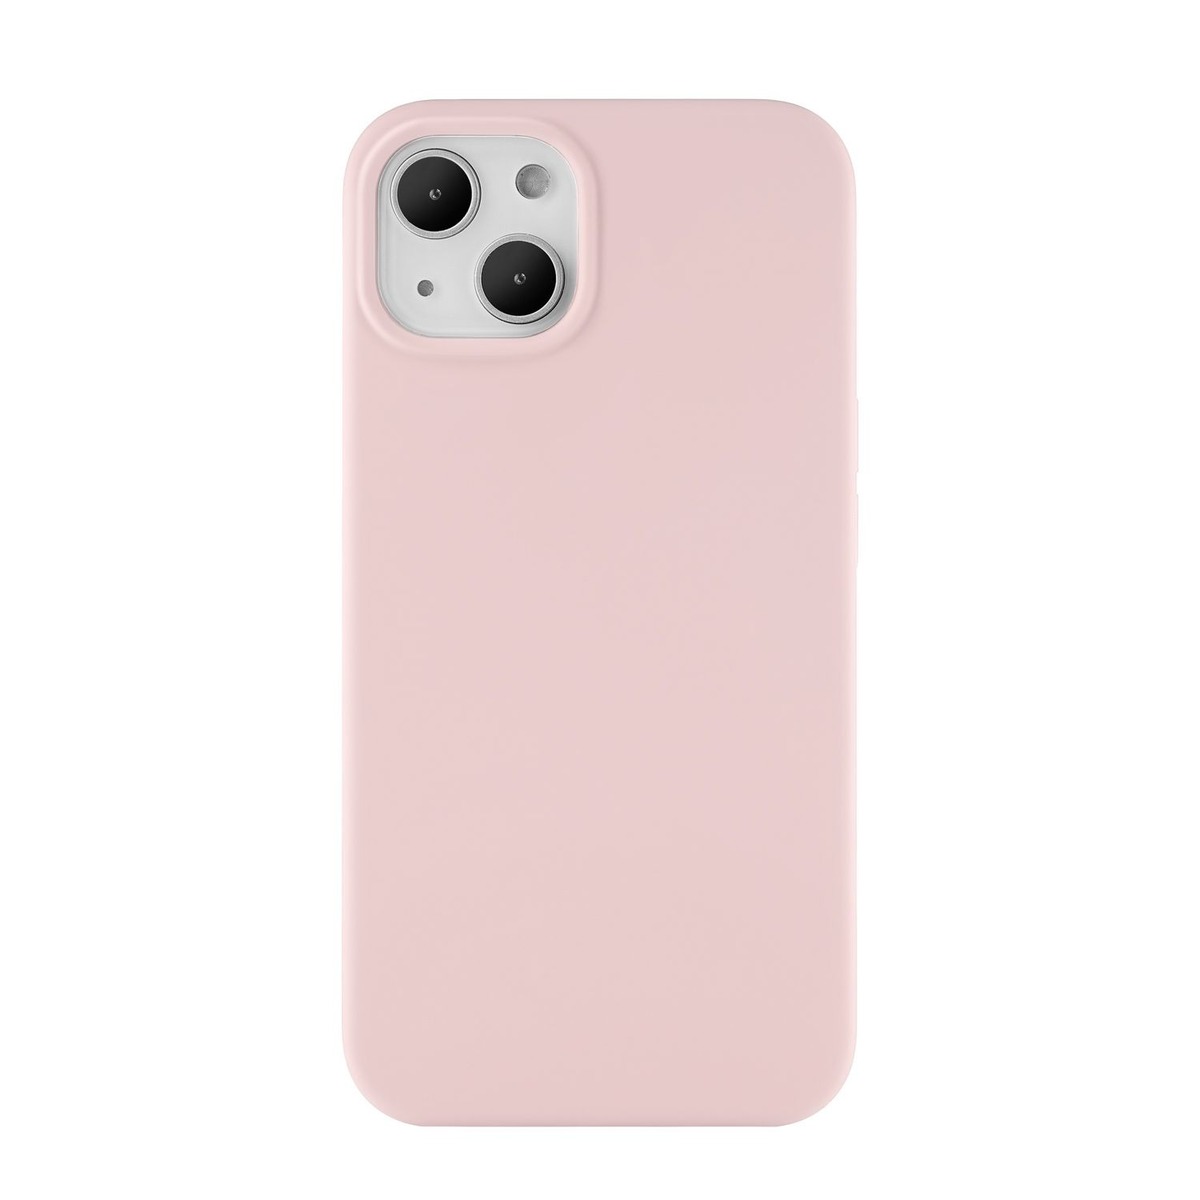 Чехол-накладка uBear Touch Mag Case для смартфона Apple iPhone 13 (Цвет: Rose)